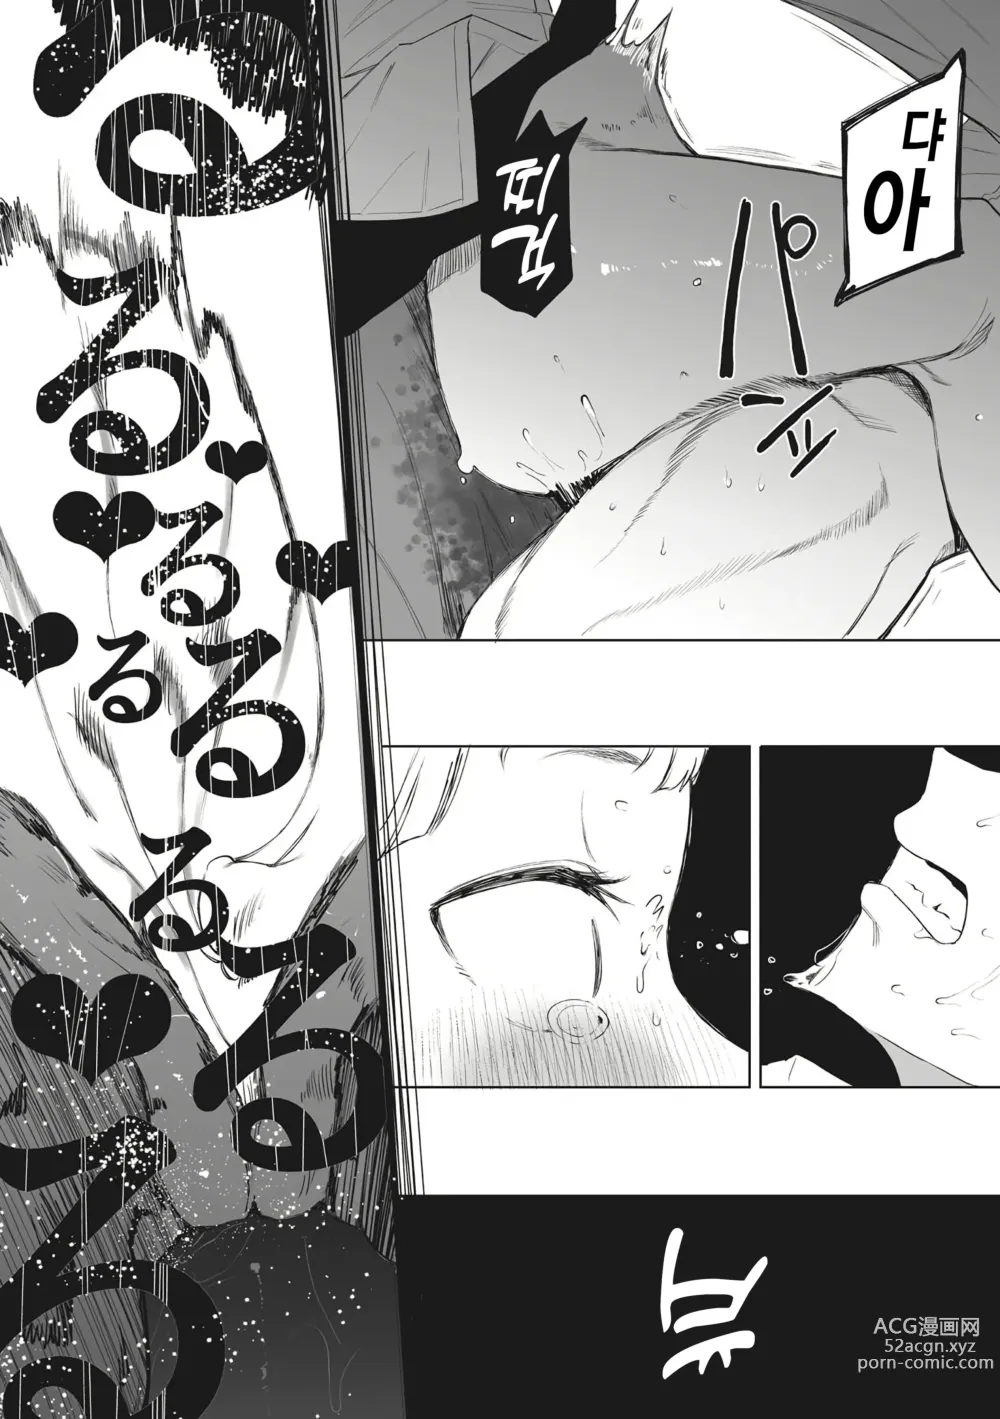 Page 31 of manga Eightman Sensei no Okage de Kanojo ga Dekimashita!